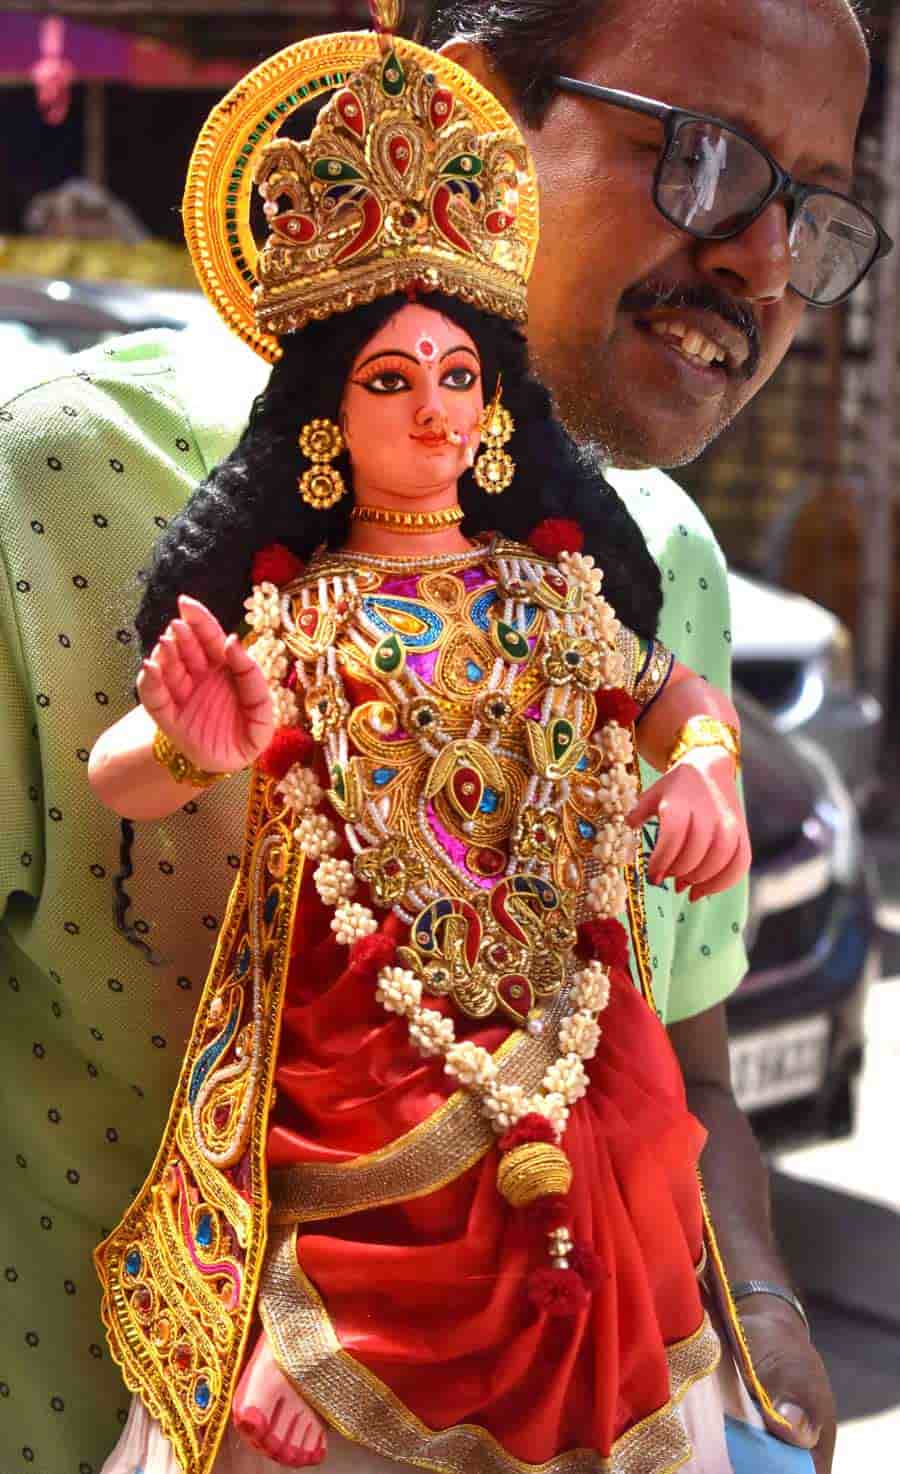 A man carries an idol of goddess Lakshmi